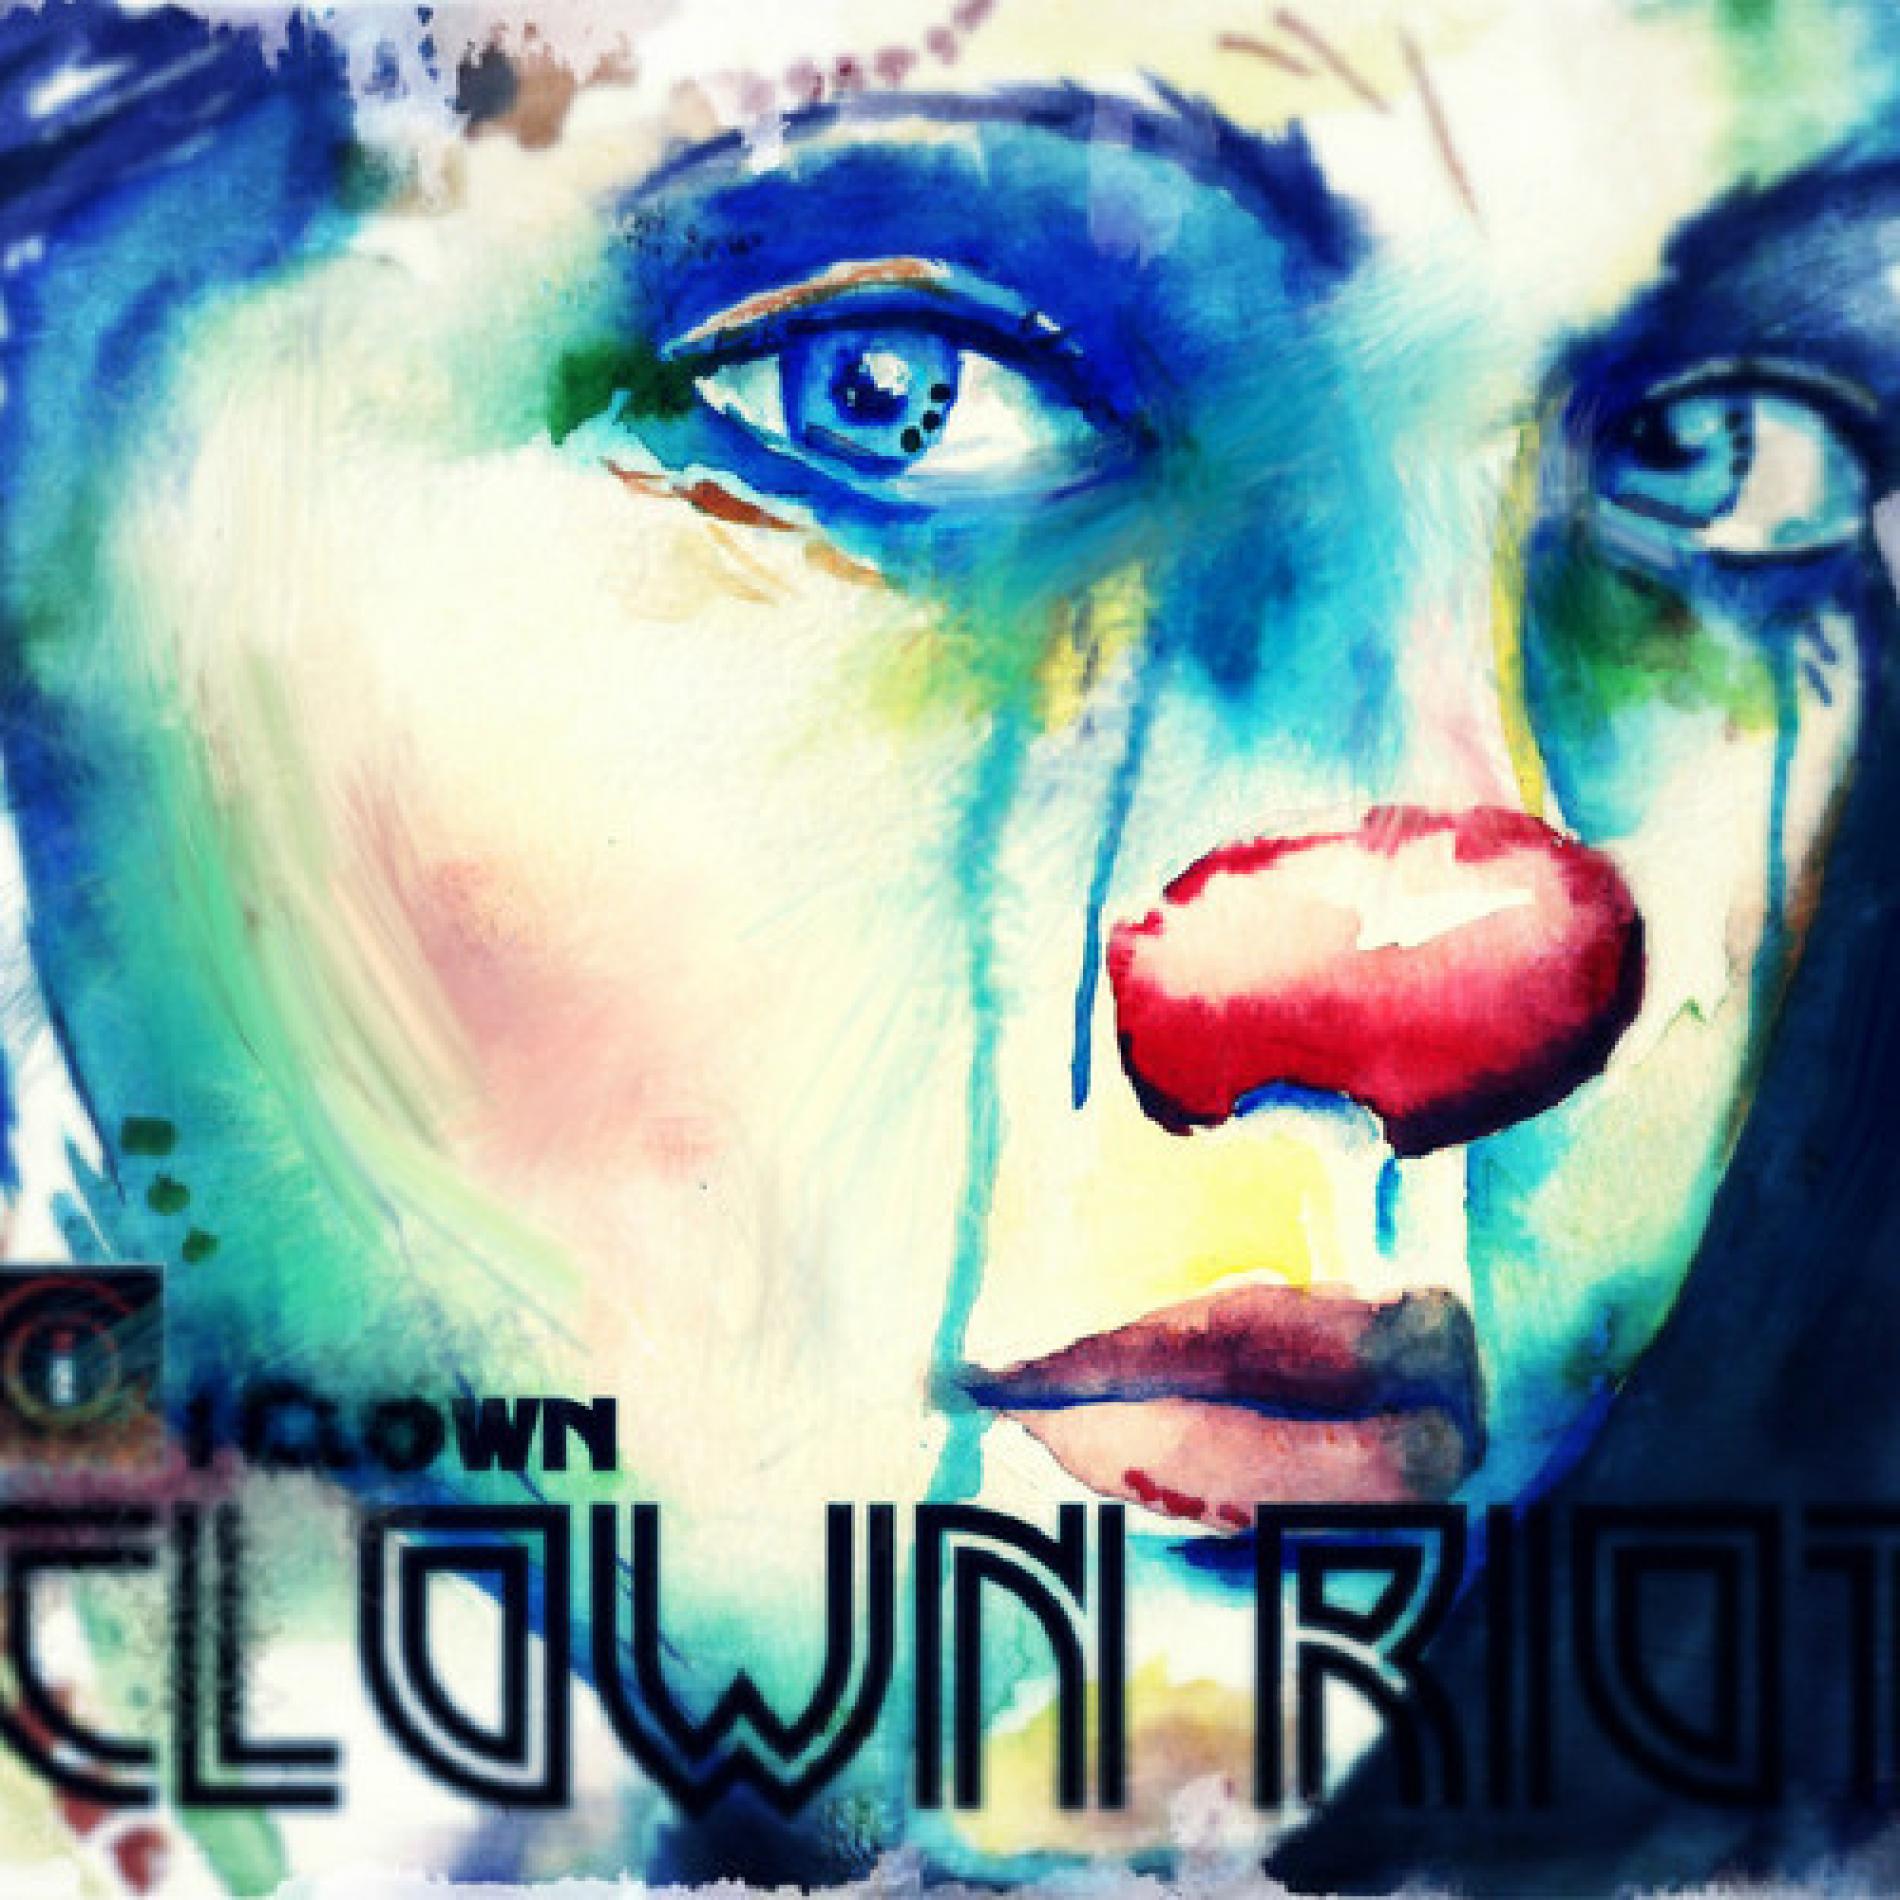 iClown-Clown Riot